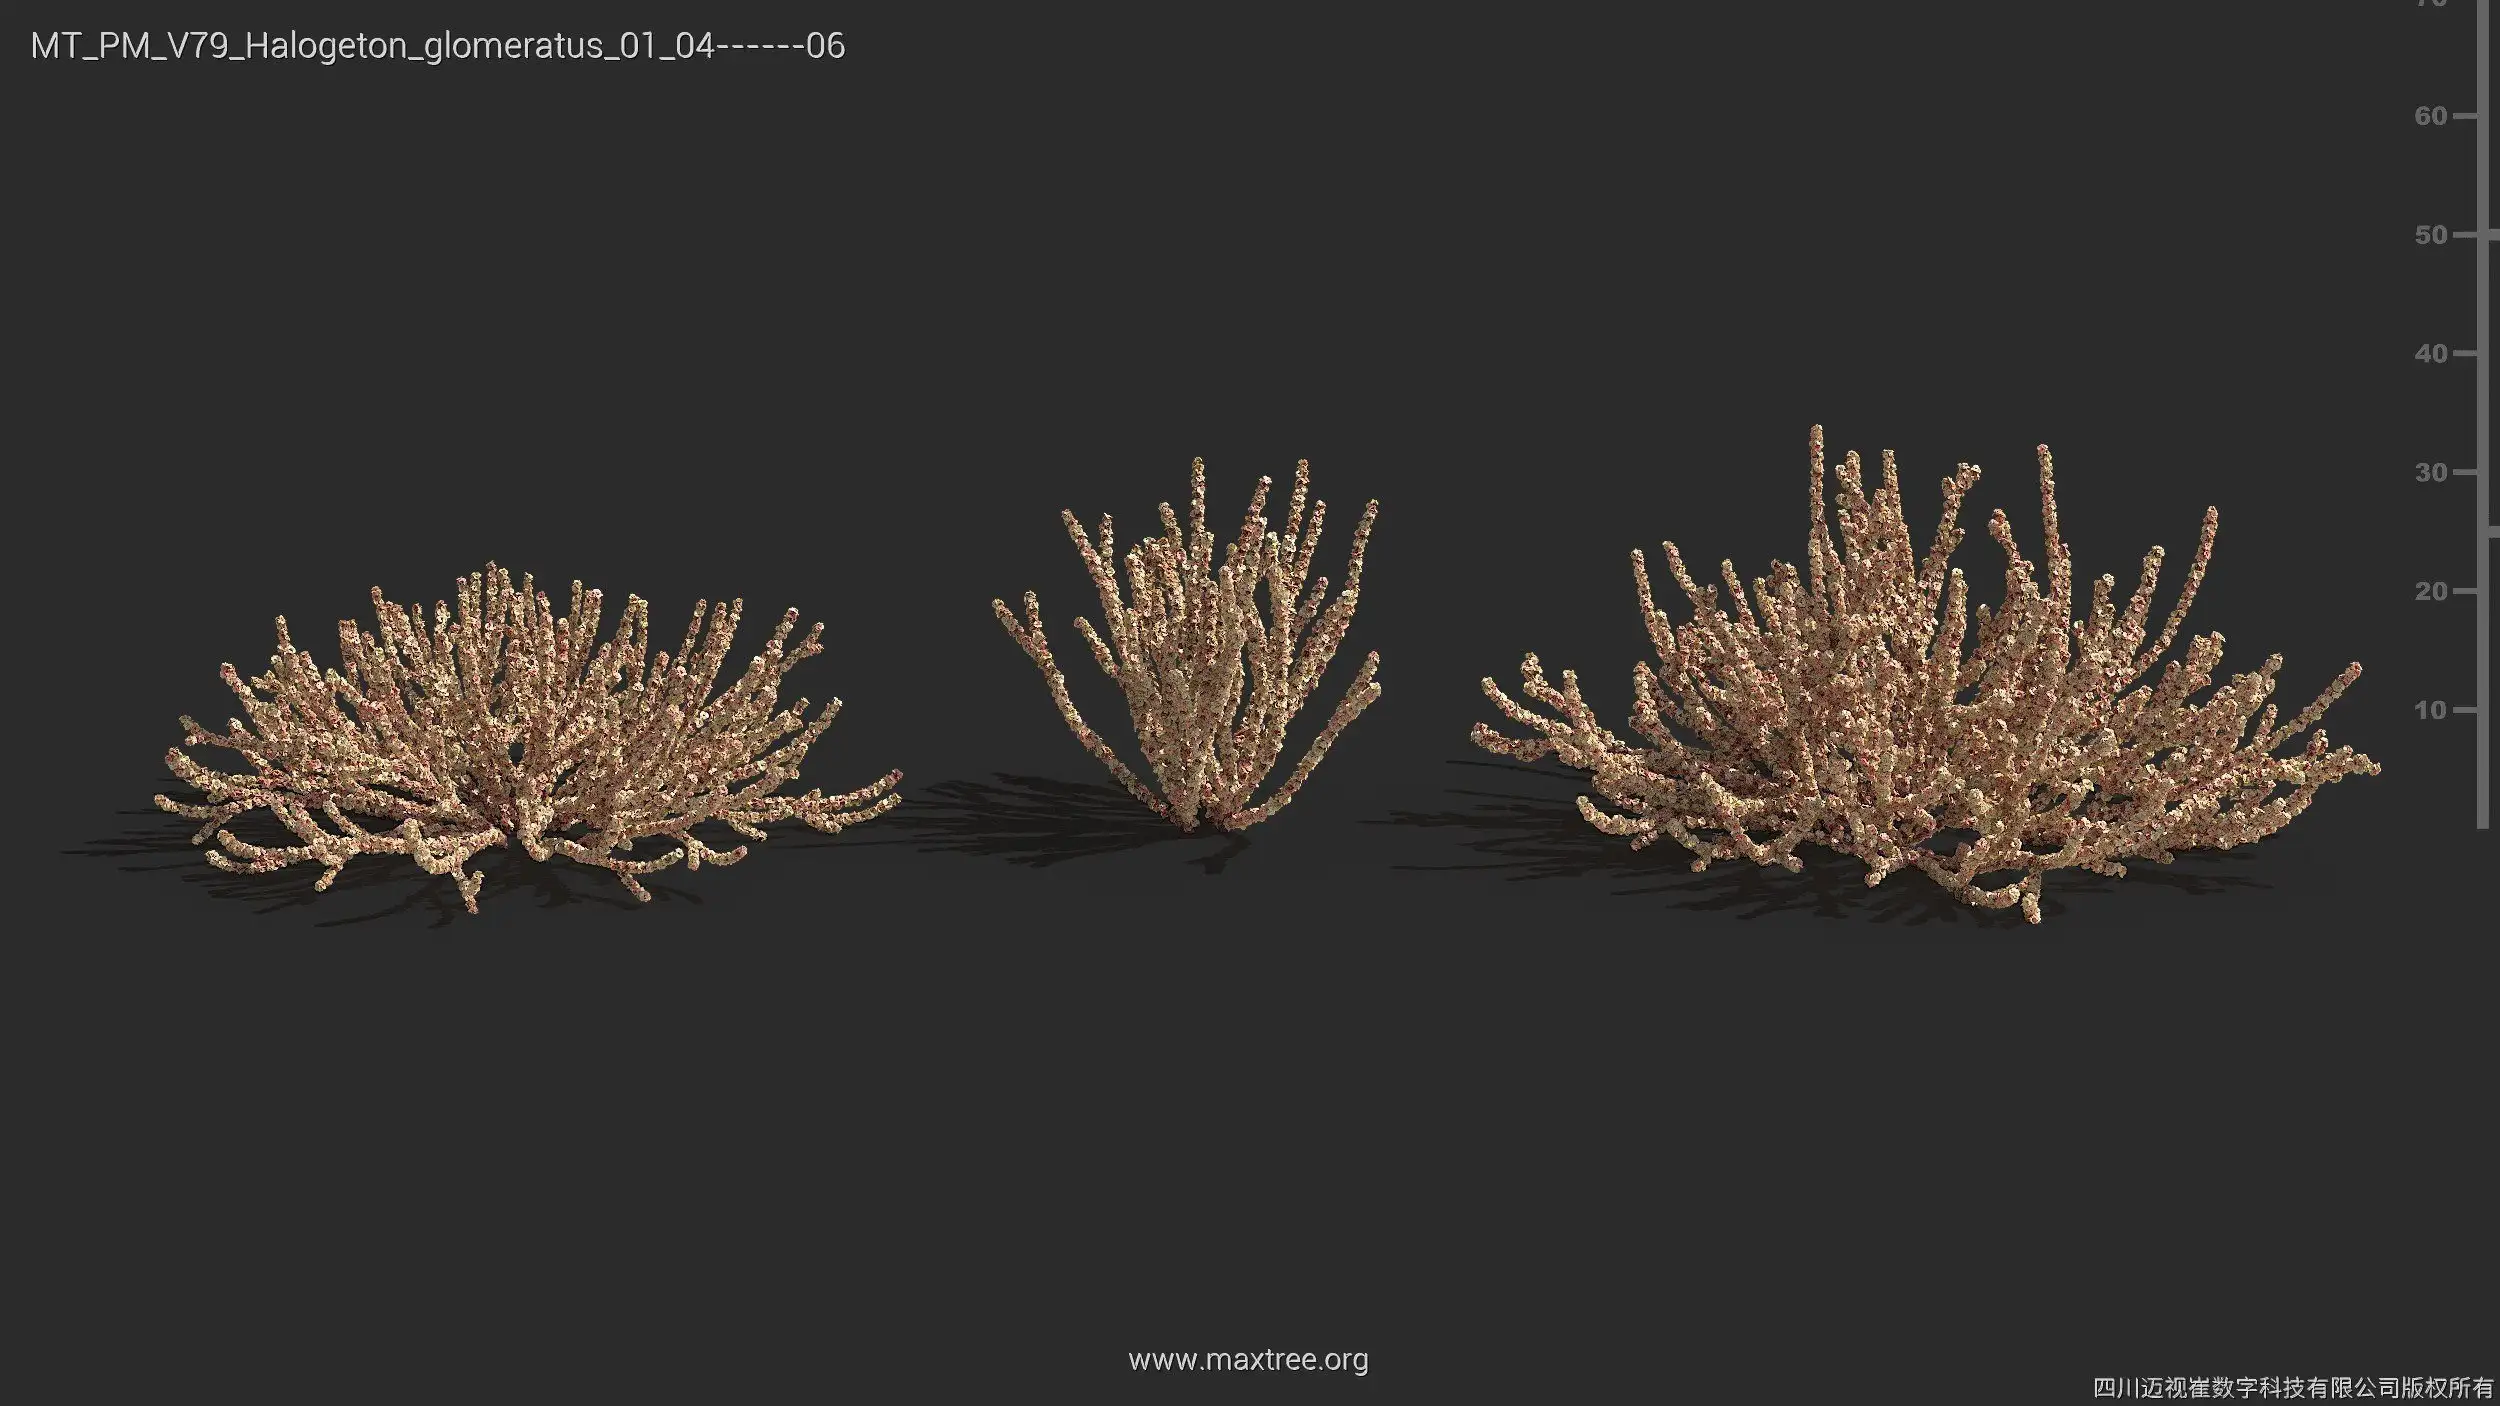 مدل سه بعدی گیاهان بیابانی - 12